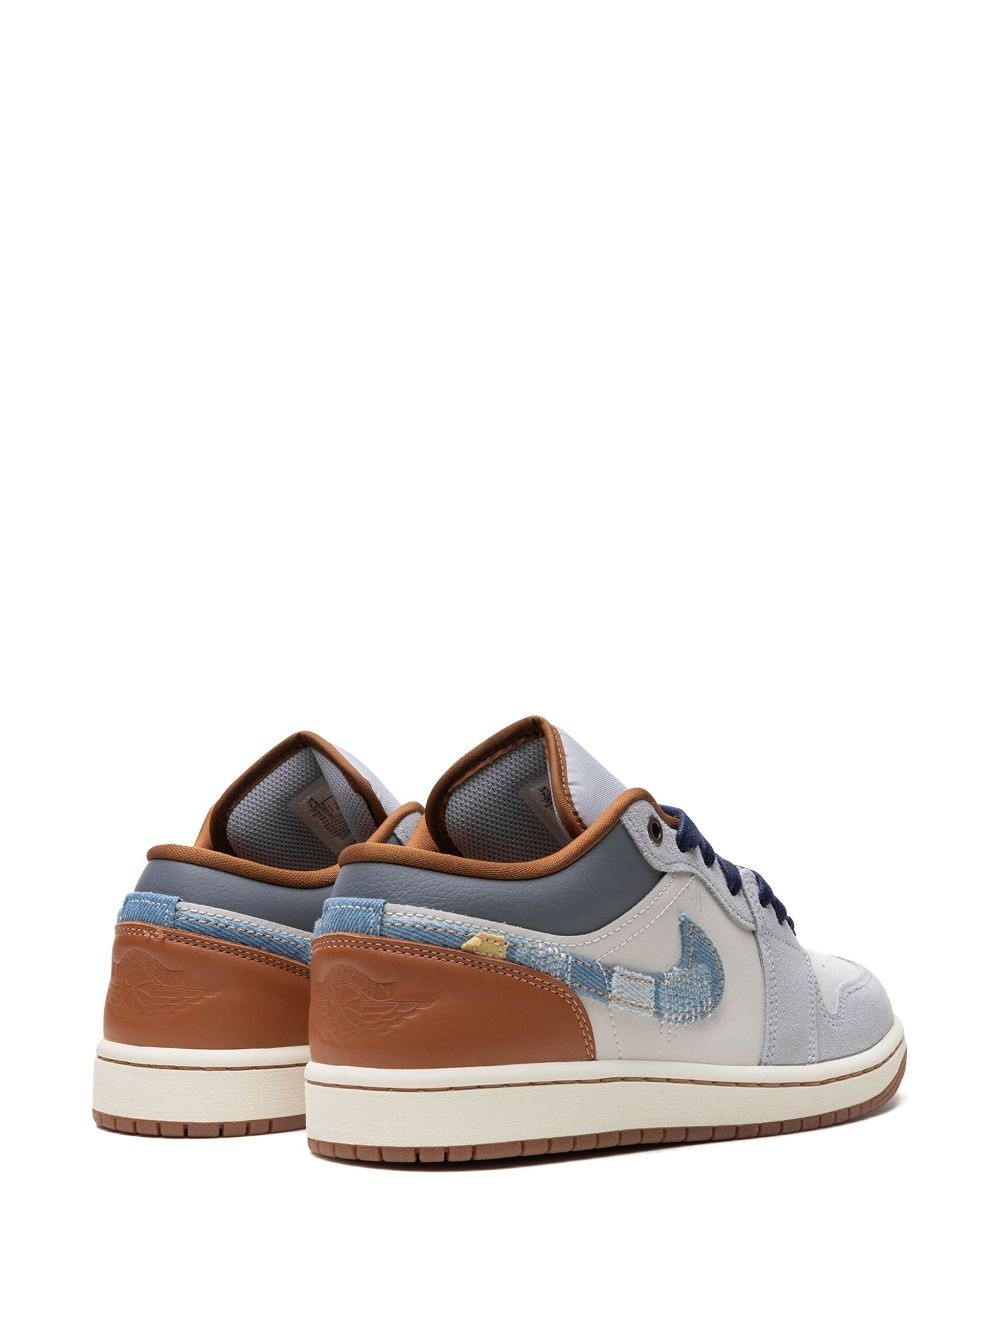 Air Jordan 1 "Repaired Denim" sneakers - 3